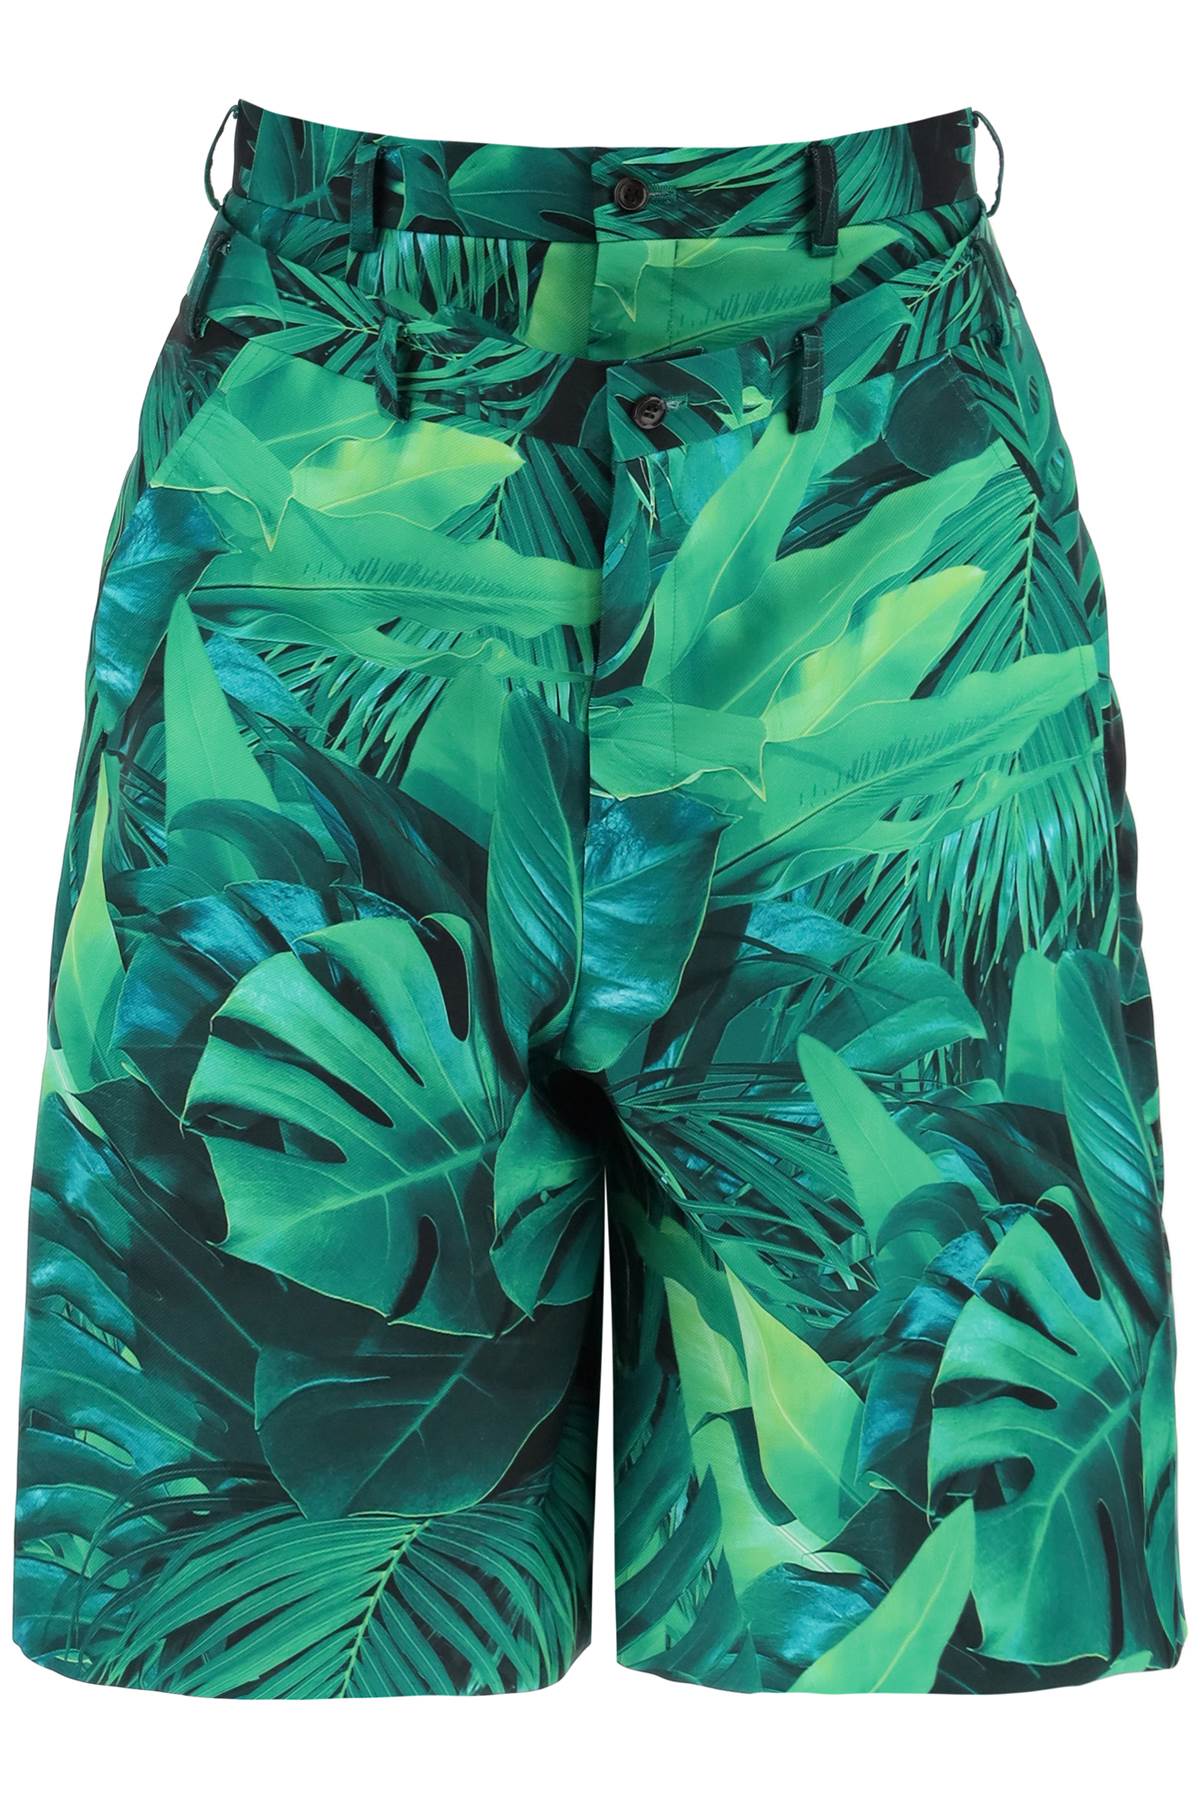 热带风情铆钉双层休闲短裤